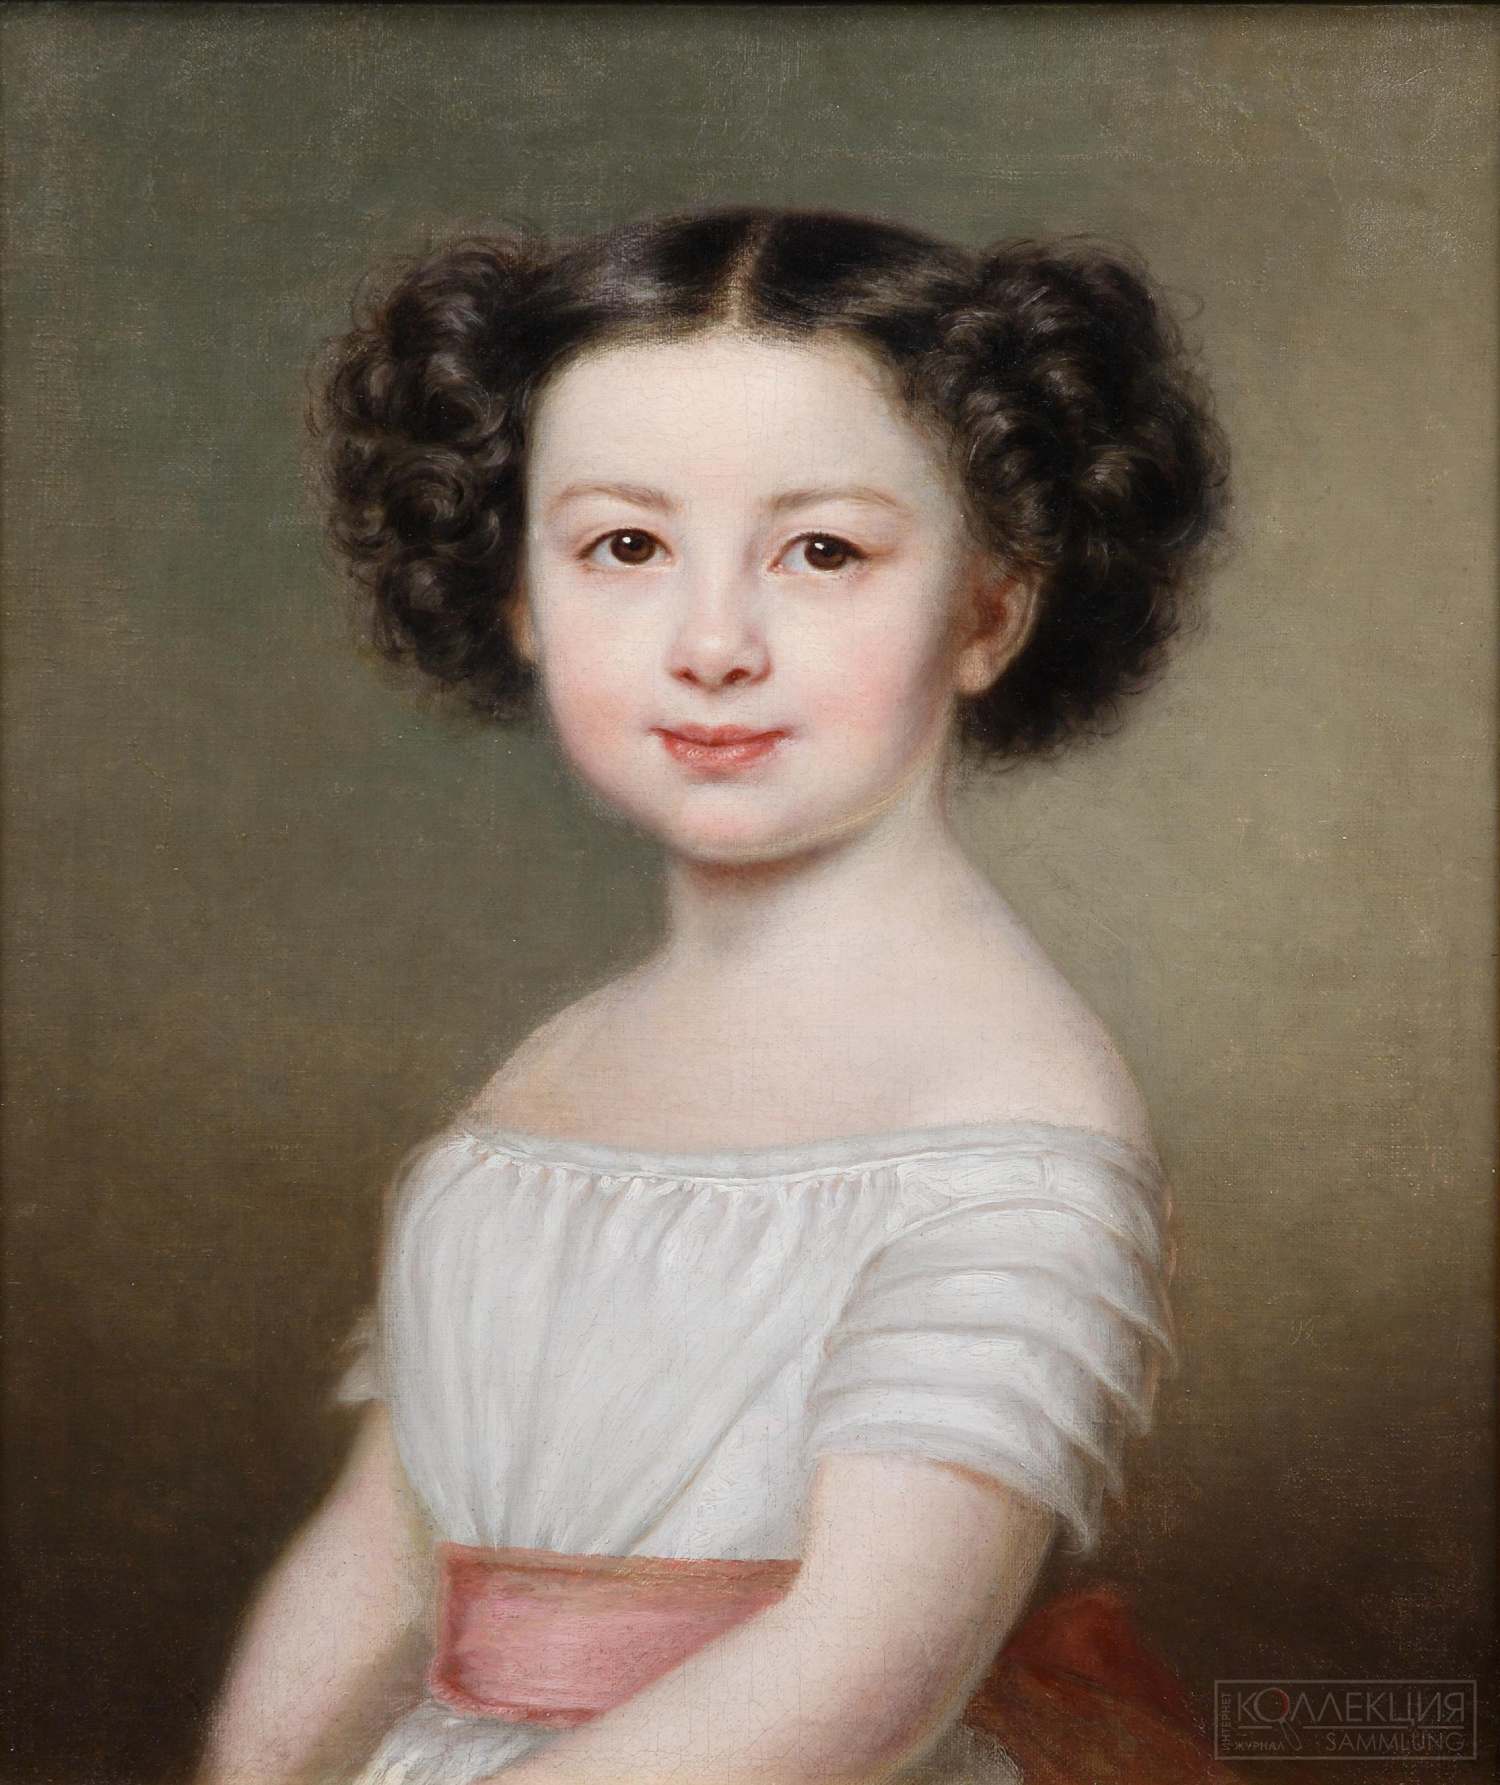 Неизвестный художник XIX века. Портрет девочки в белом платье с розовым поясом